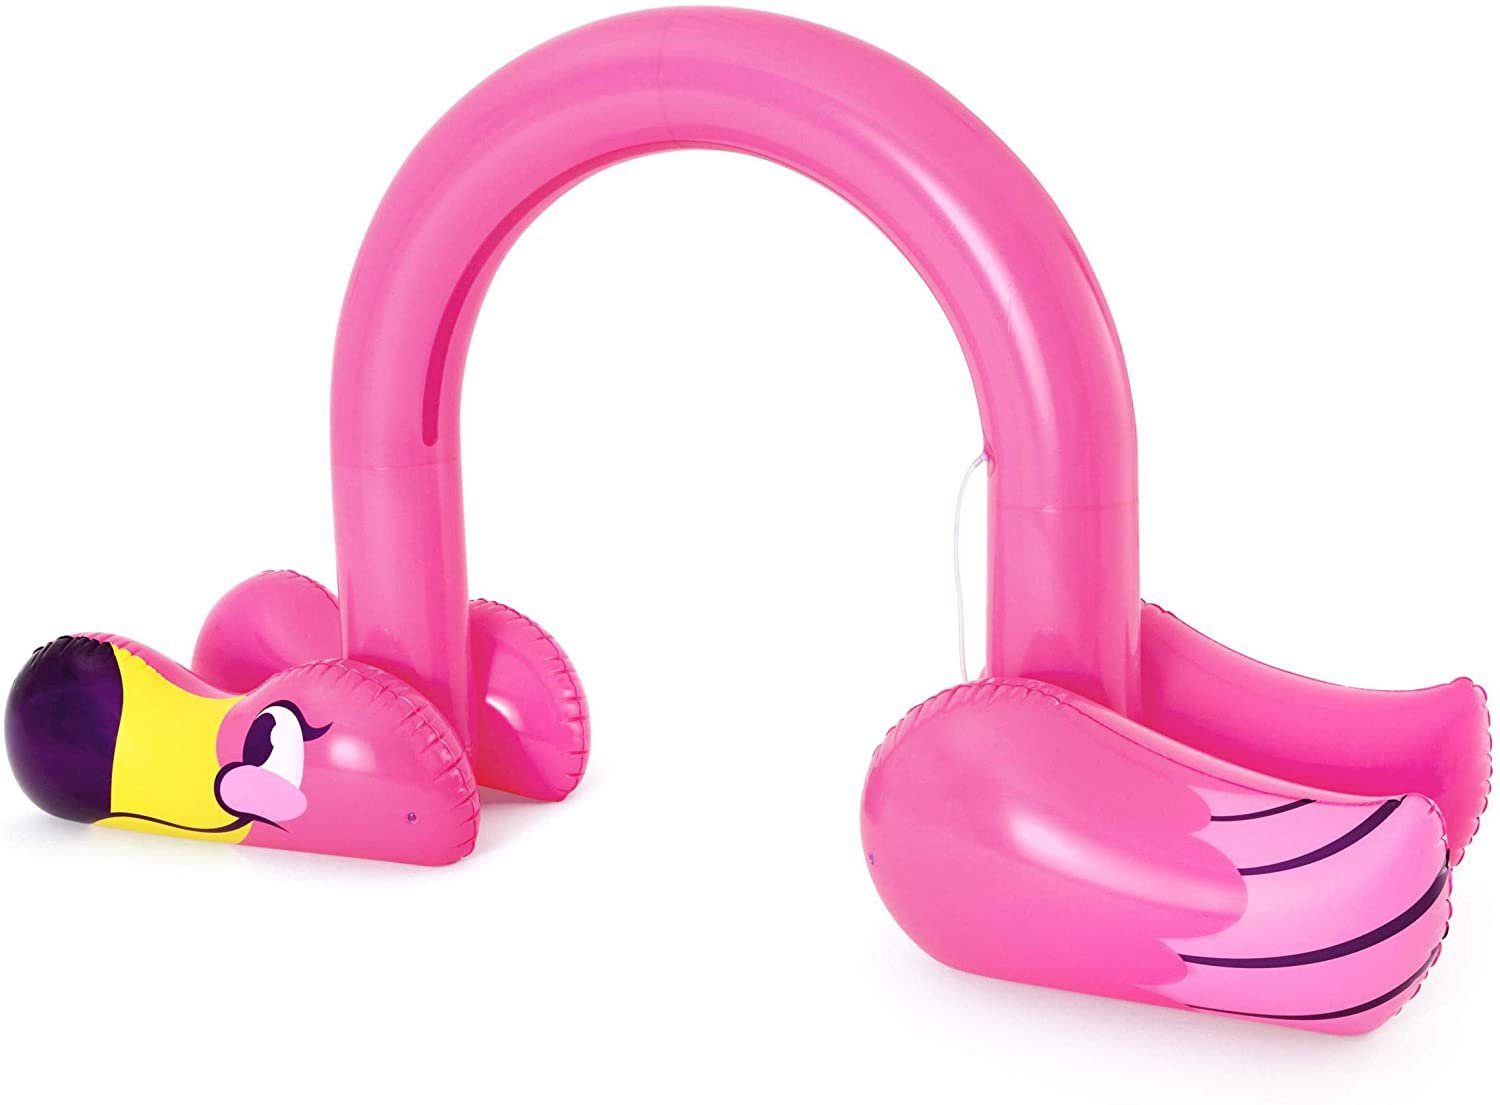 Bestway Flamingo Jumbo Badespielzeug